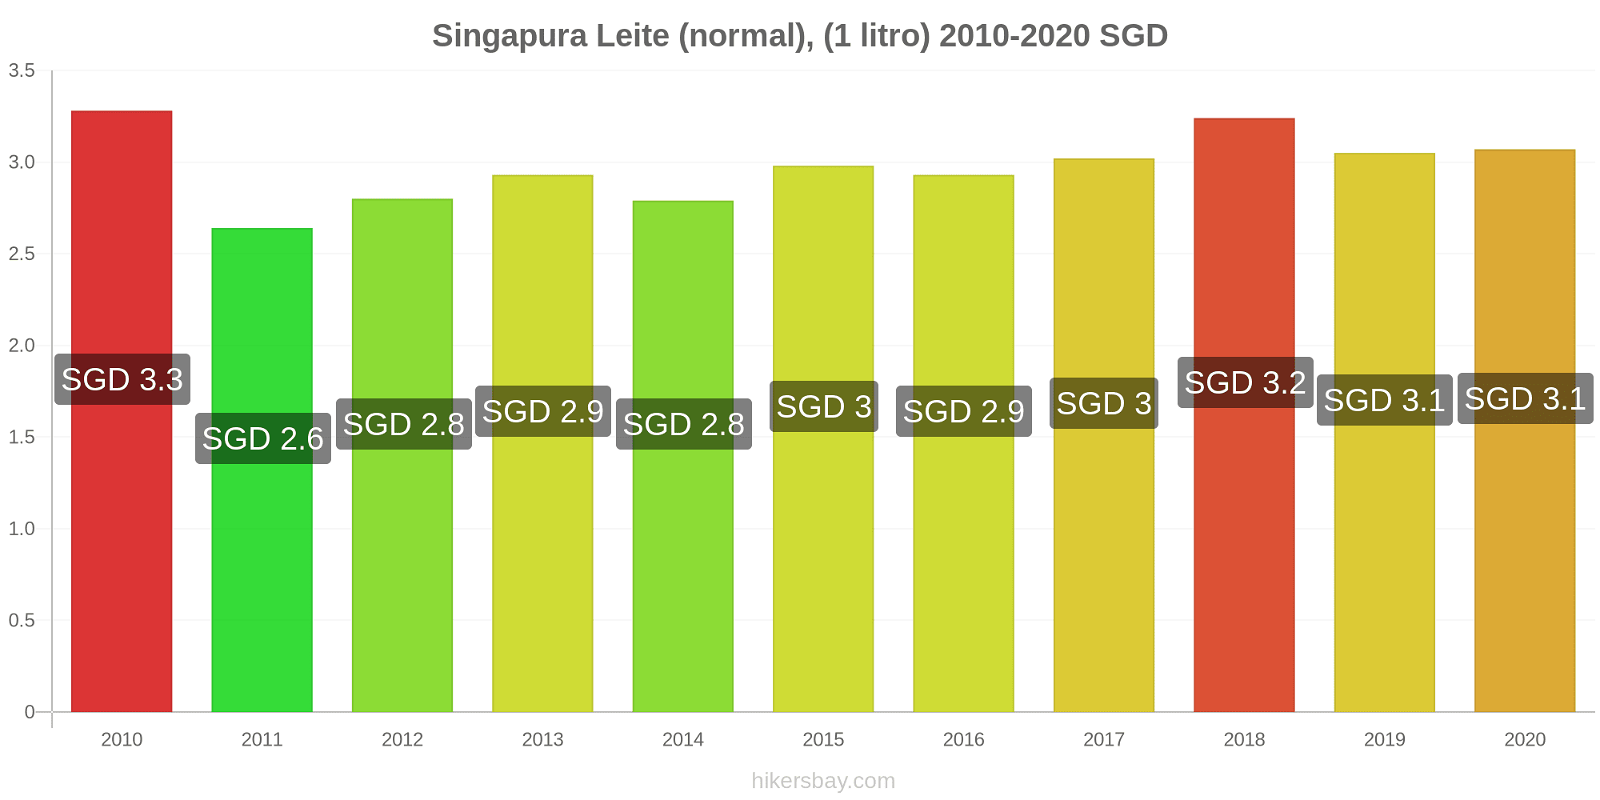 Singapura variação de preço (Regular), leite (1 litro) hikersbay.com